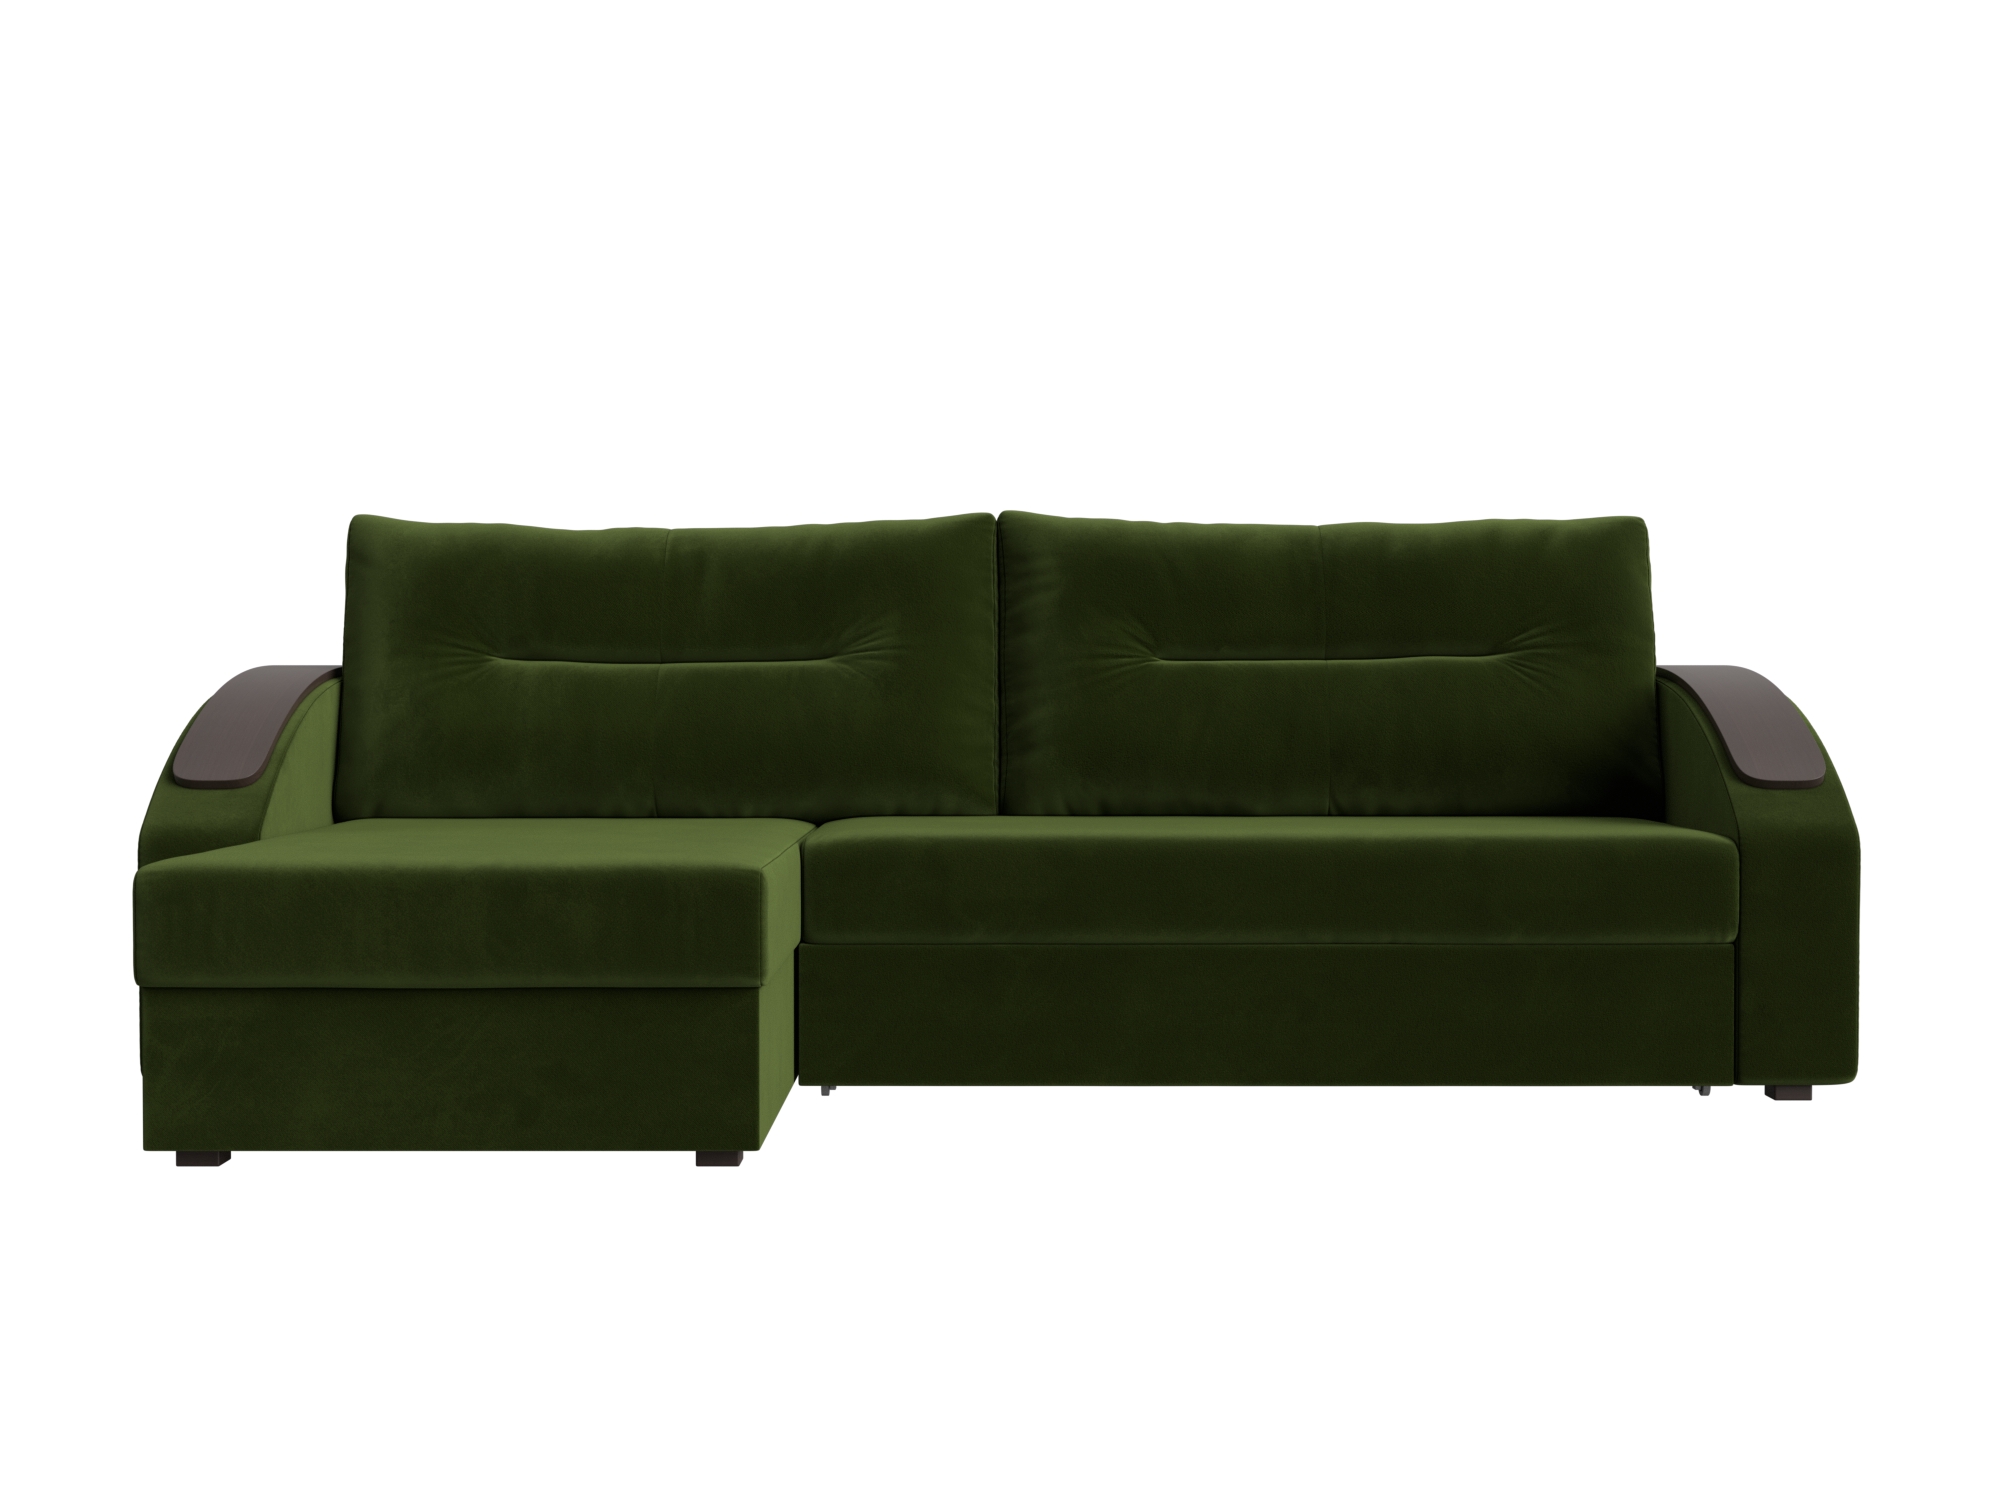 Угловой диван Канзас Левый MebelVia , Зеленый, Микровельвет, ЛДСП диван угловой мебелико сенатор микровельвет зеленый левый